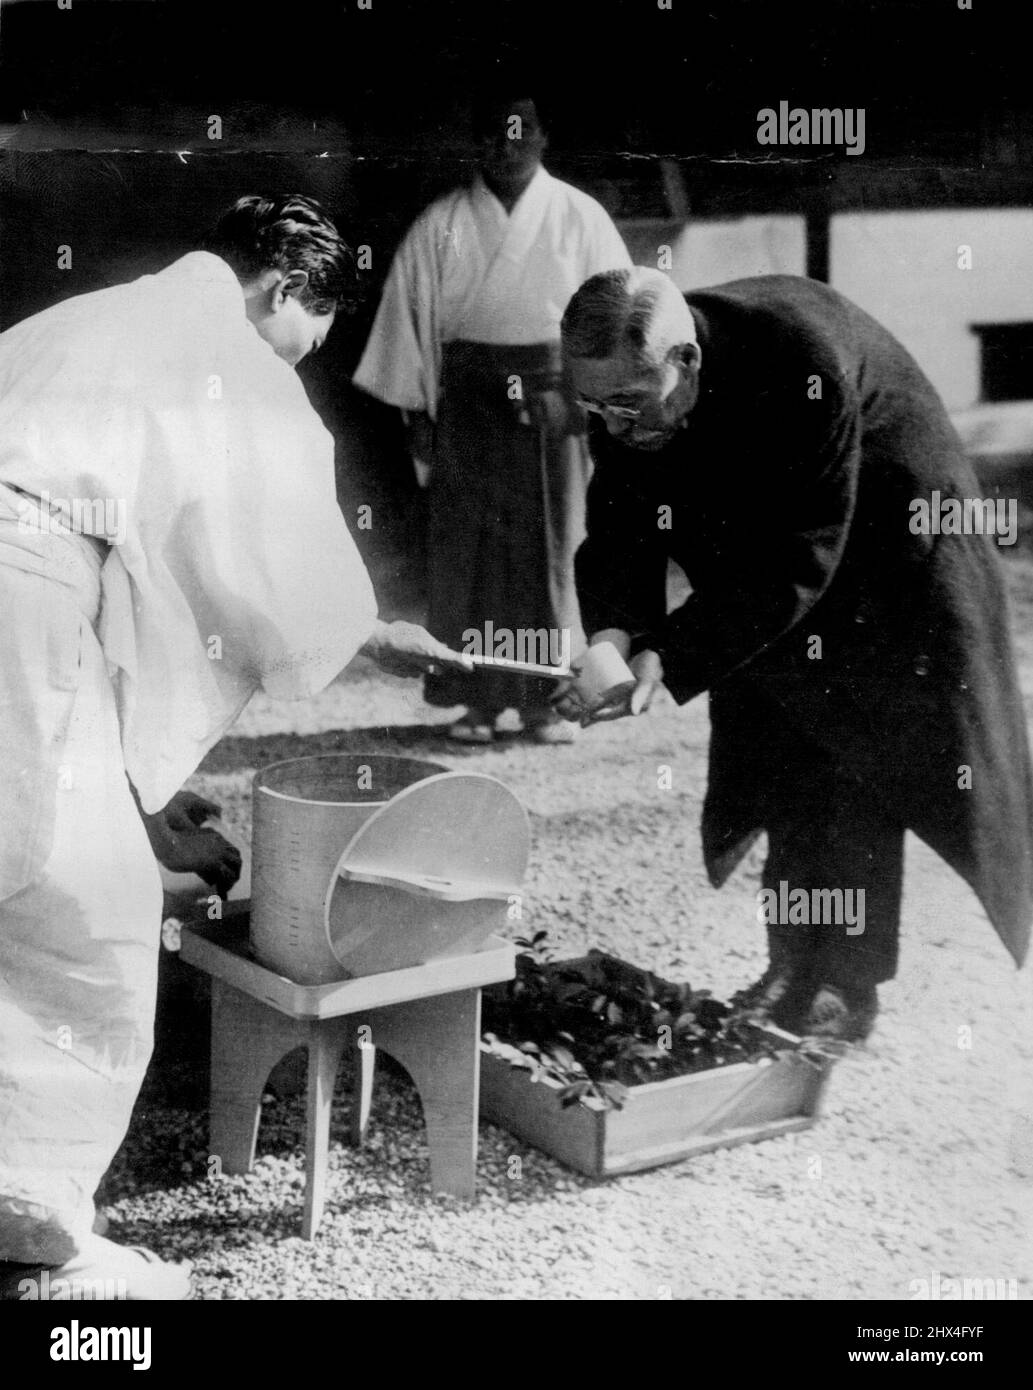 Giappone il nuovo primo Ministro purifica le mani prima di informare gli antenati -- Barone Kiichiro Hiranuma, nuovo primo Ministro giapponese, purifica le mani prima di entrare in un santuario per 'segnalare' ai suoi antenati che ha assunto la leadership del governo. Febbraio 20, 1939. (Foto di stampa associata). Foto Stock